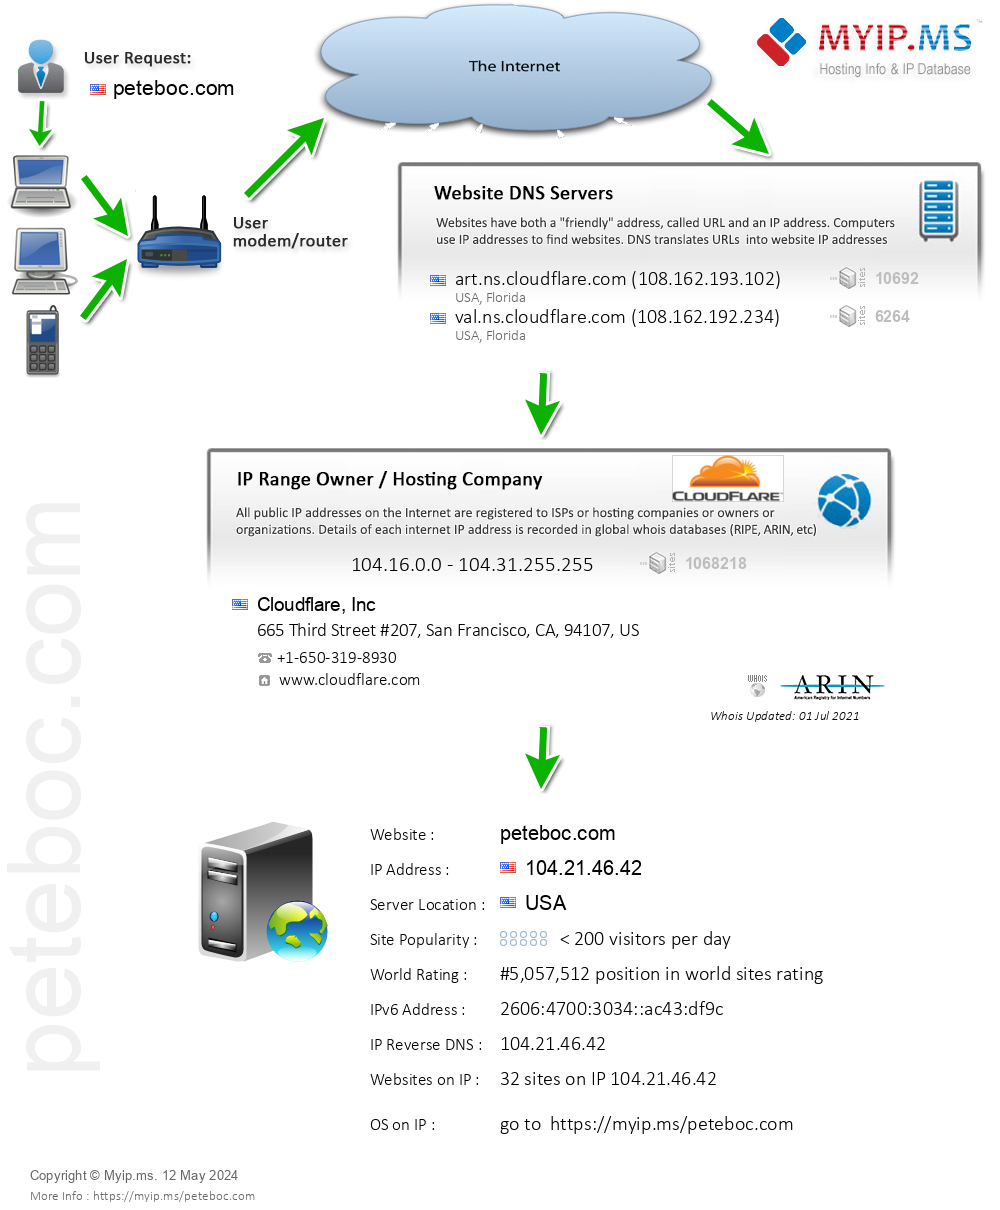 Peteboc.com - Website Hosting Visual IP Diagram